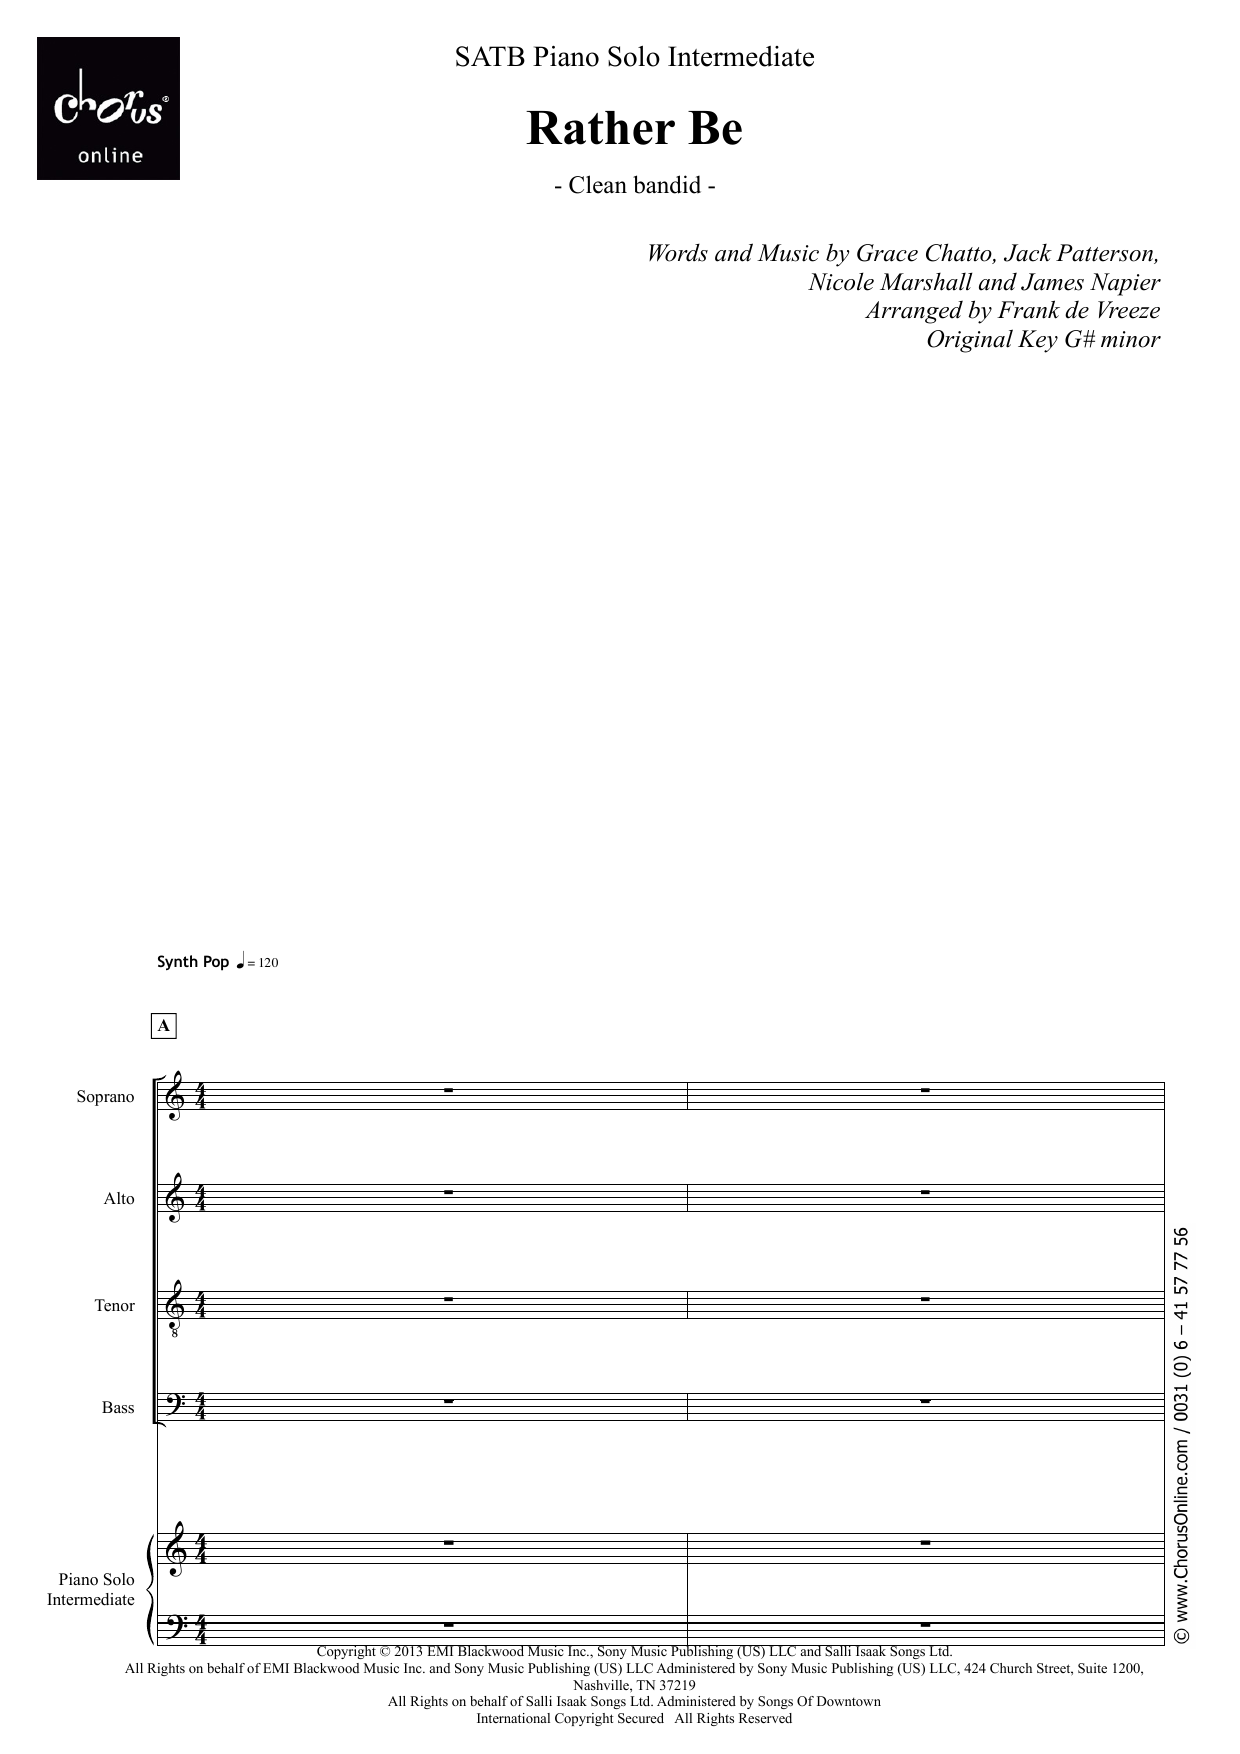 Clean Bandit Rather Be (arr. Frank de Vreeze) sheet music notes printable PDF score